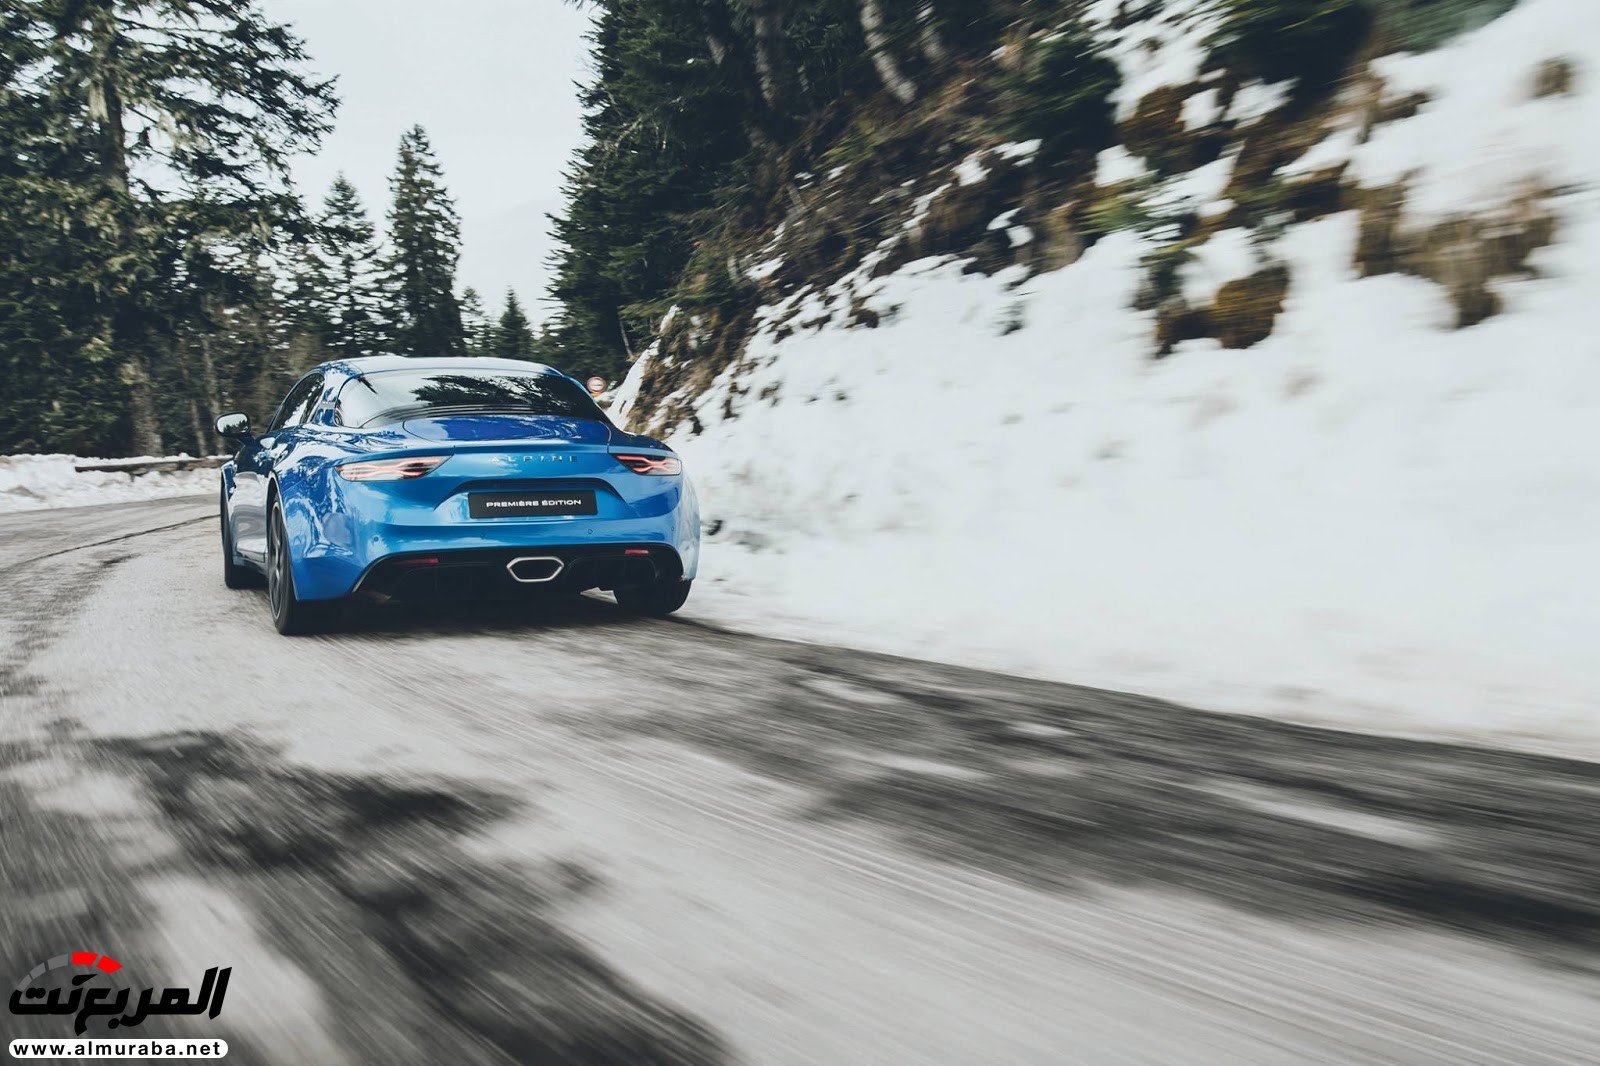 "صور مسربة" تكشف عن عودة "ألباين" بالسيارة الرياضية A110 الجديدة كليا 2018 Alpine 40